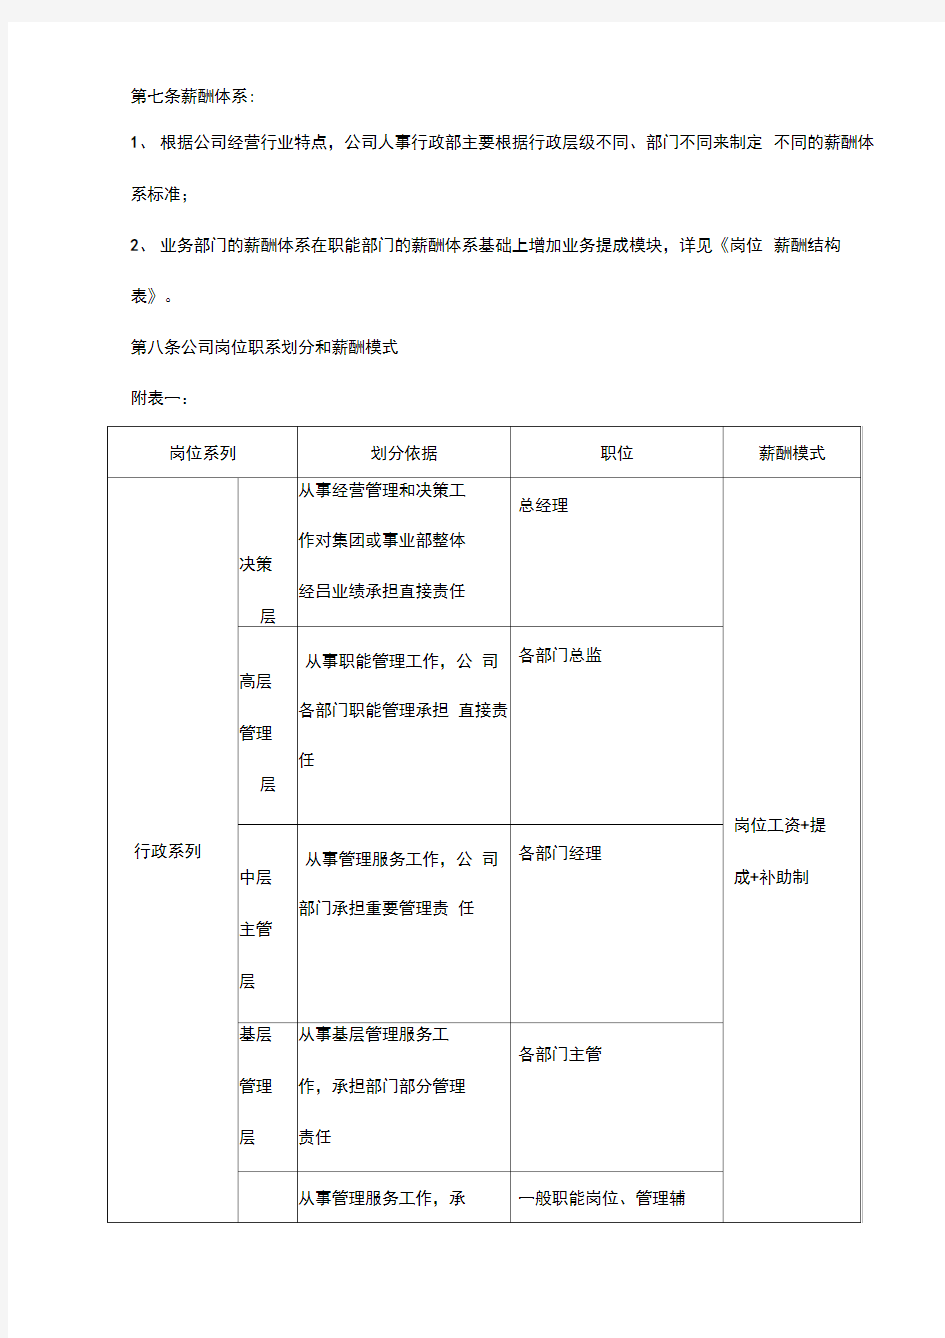 杭州平头哥半导体公司网络科技公司薪酬管理办法